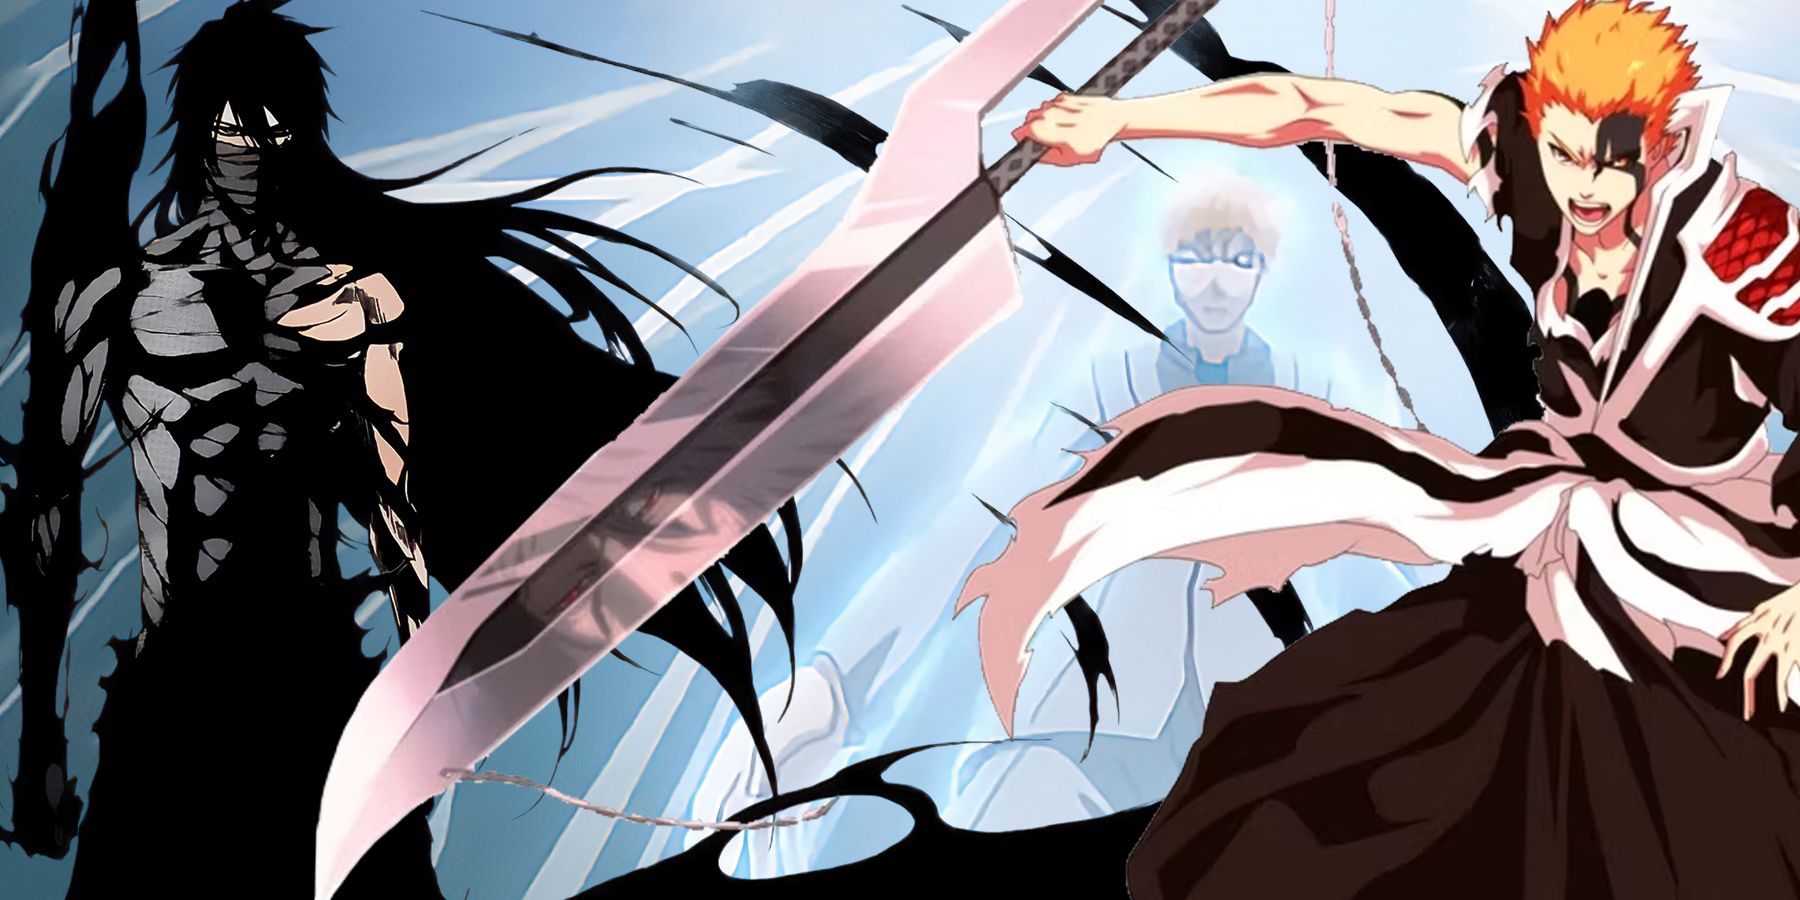 Bleach - Ichigo - Cloaked in POWER  Bleach anime ichigo, Bleach anime,  Bleach